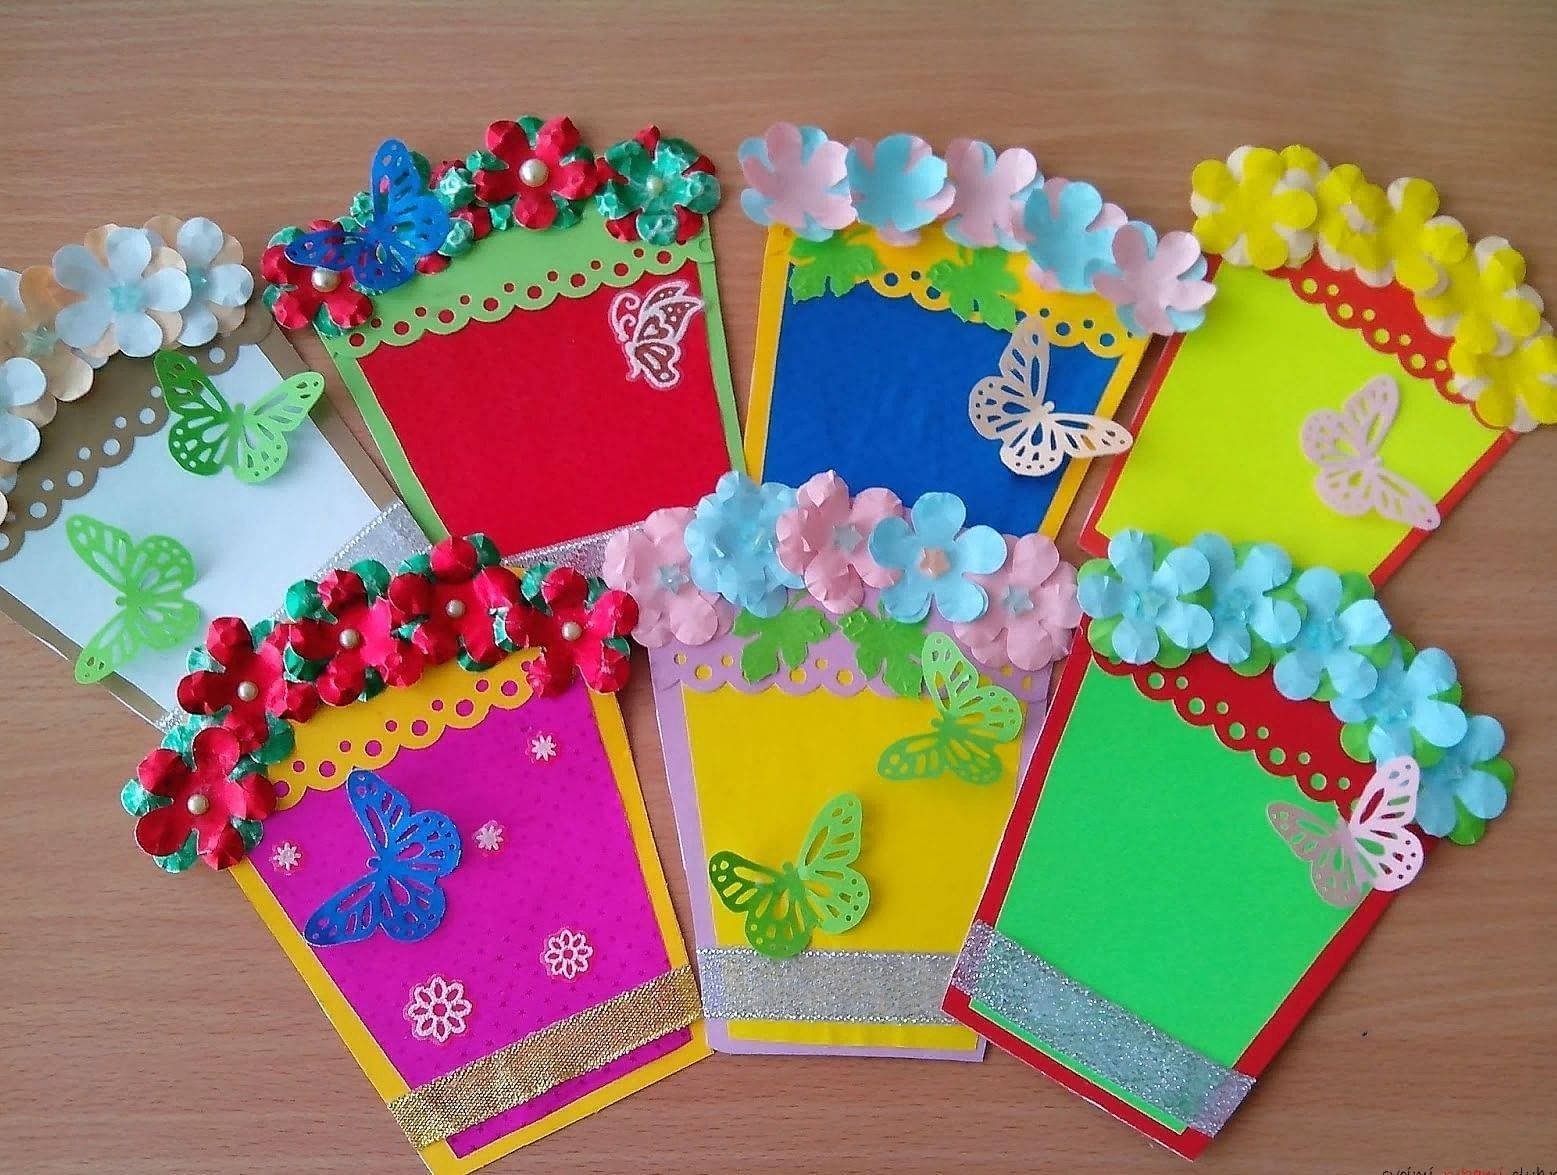 открытки своими руками воспитателю - Поиск в Google | Spring flower crafts, Crafts, Crafts for kids